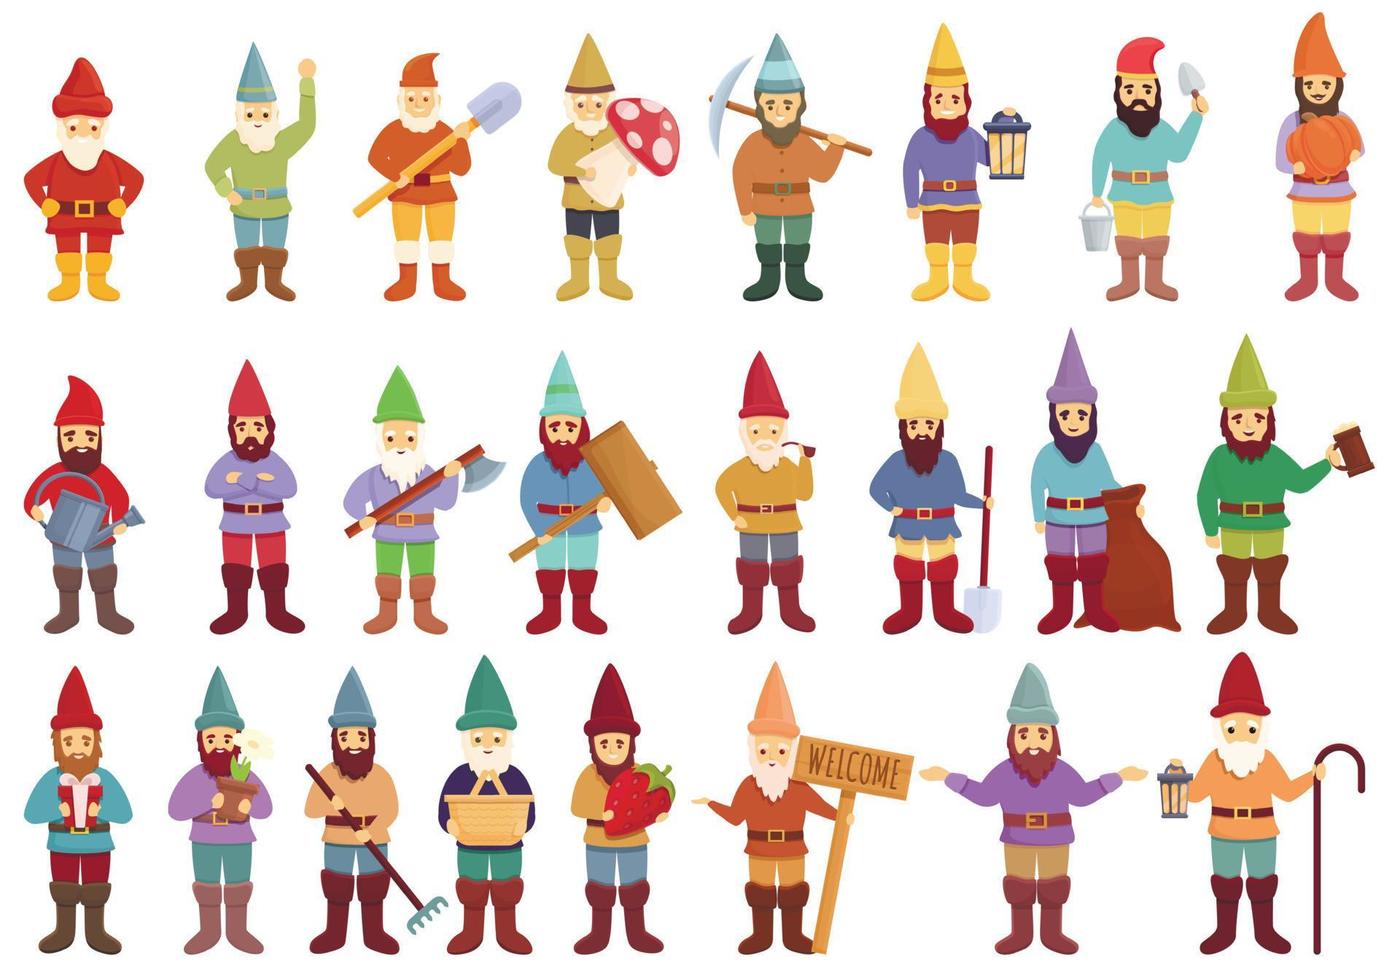 Garden gnome icons set, cartoon style vector